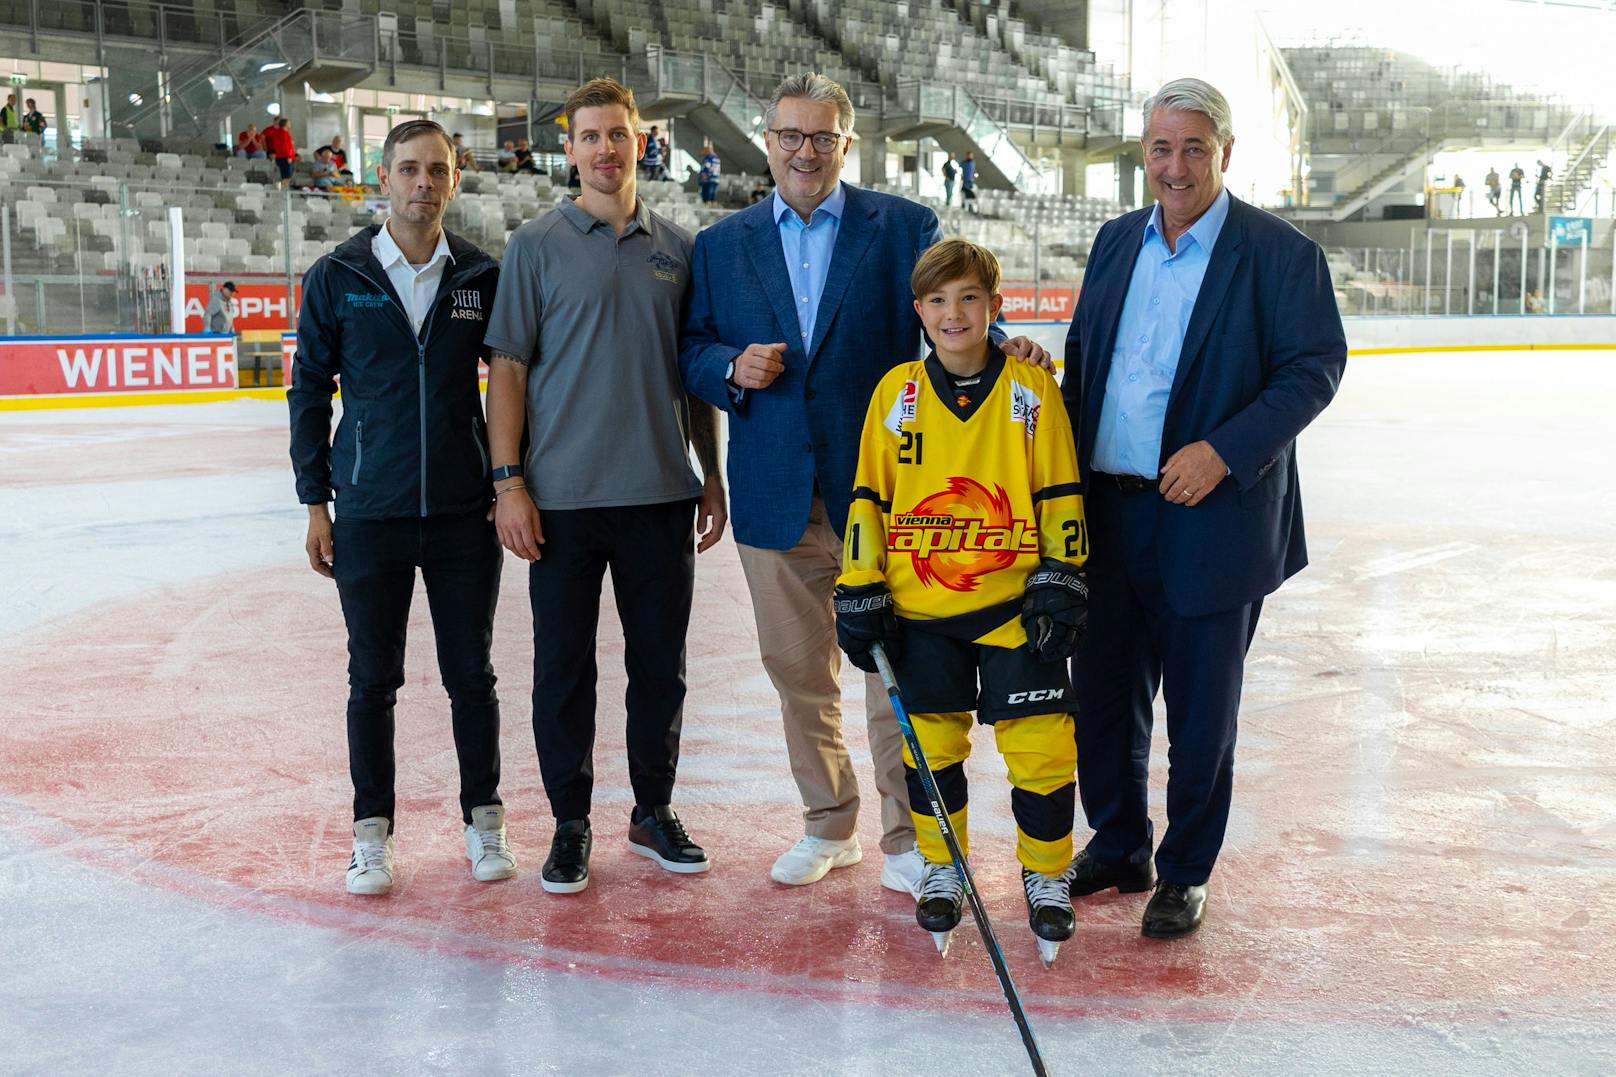 Sportstadtrat Peter Hacker (Bildmitte) mit Caps-Kapitän Mario Fischer (links daneben) und Betriebsleiter Gerald Partmann (ganz rechts) auf dem neuen Caps-Eis.